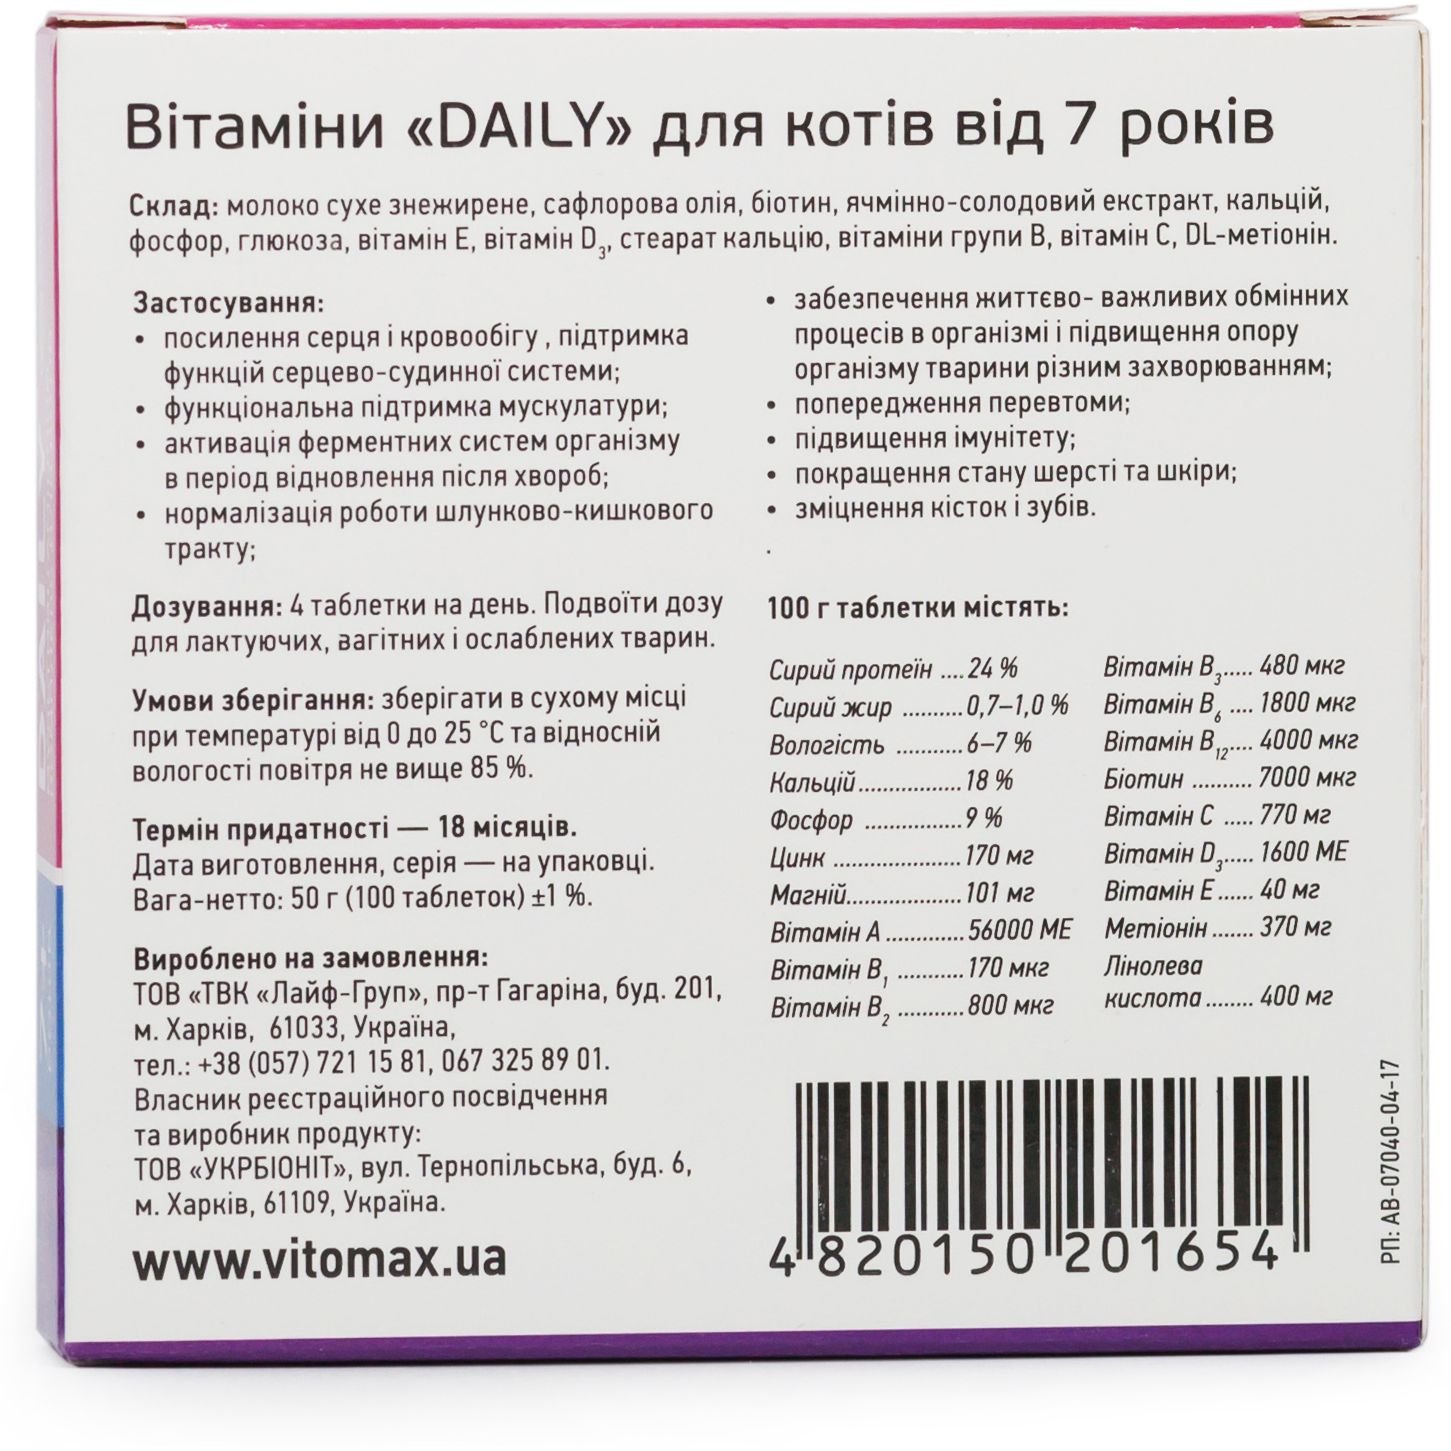 Мультивітамінний комплекс Vitomax Daily для котів 7+ років, 100 таблеток - фото 3